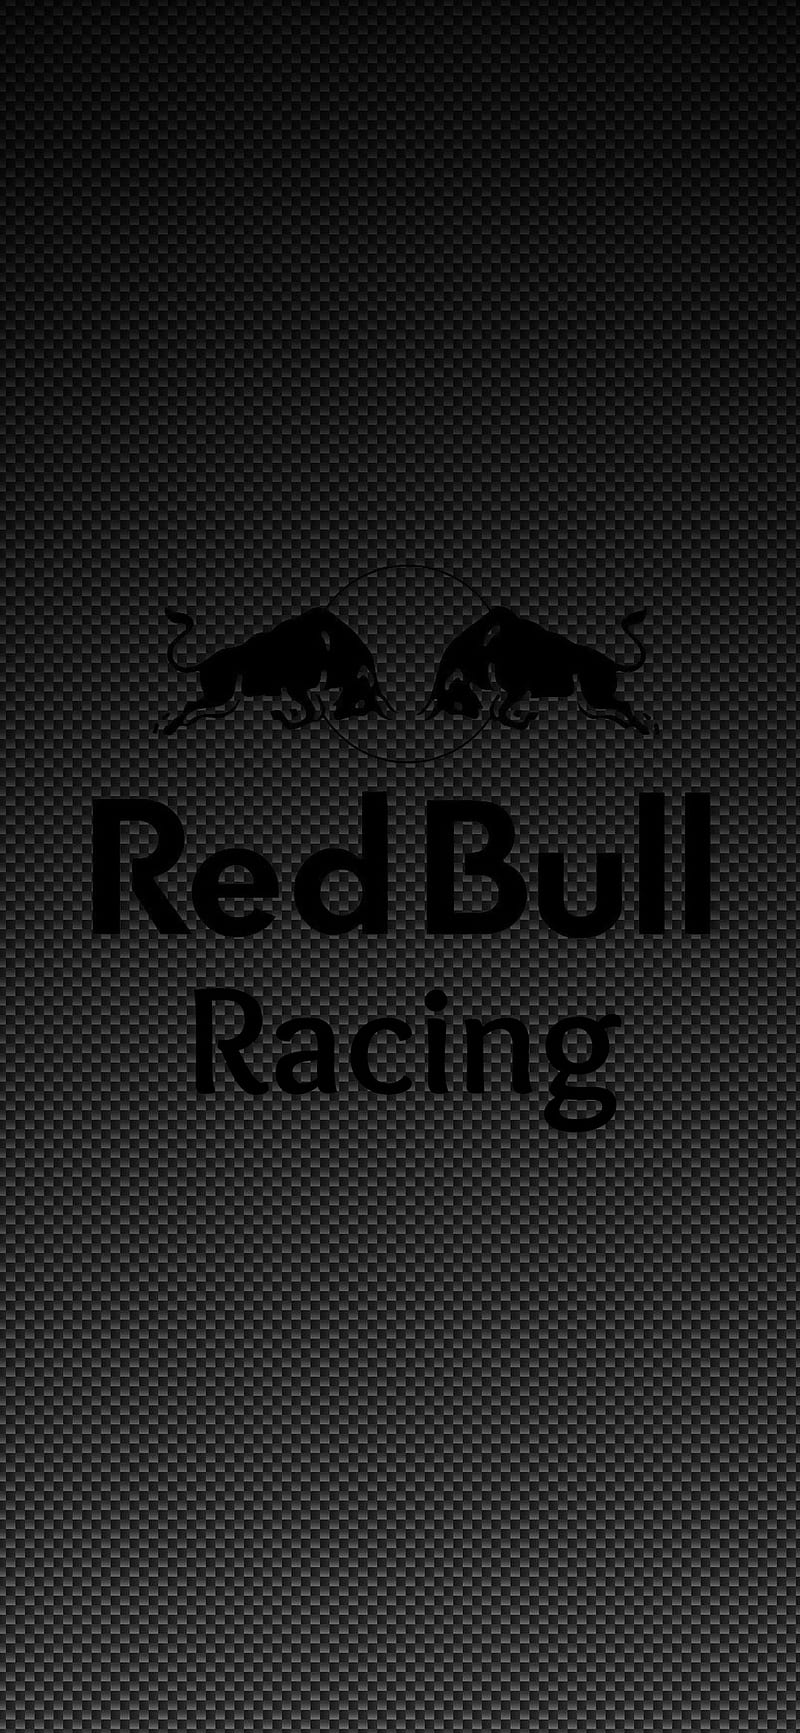 Red bull racing, carbon, red bull rating, HD phone wallpaper